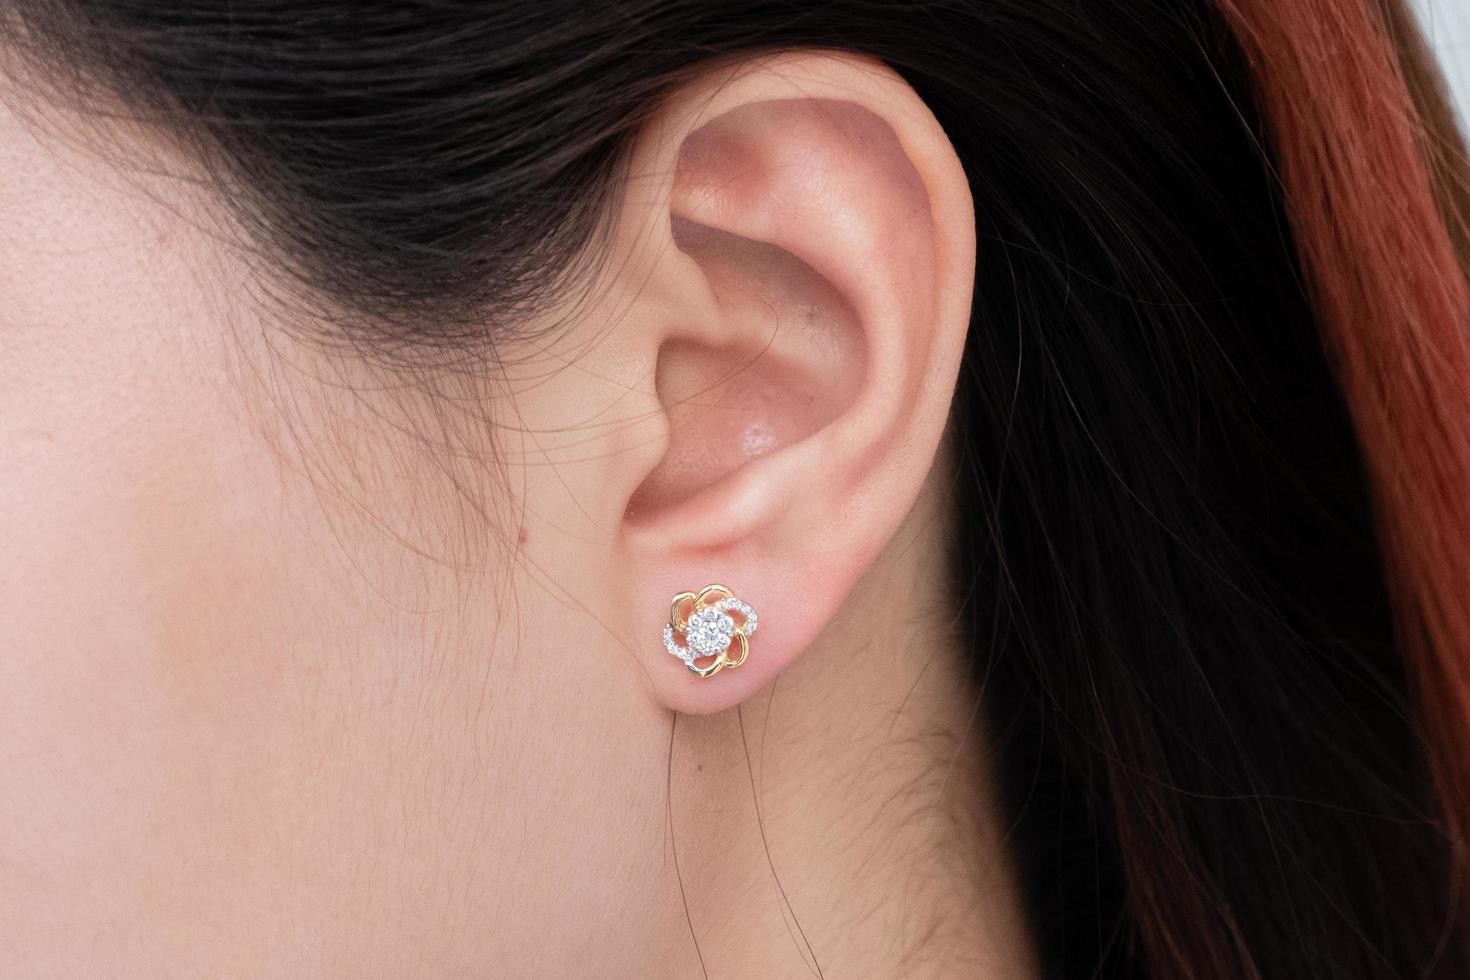 boucle d'oreille en diamant sur l'oreille d'une femme asiatique photo